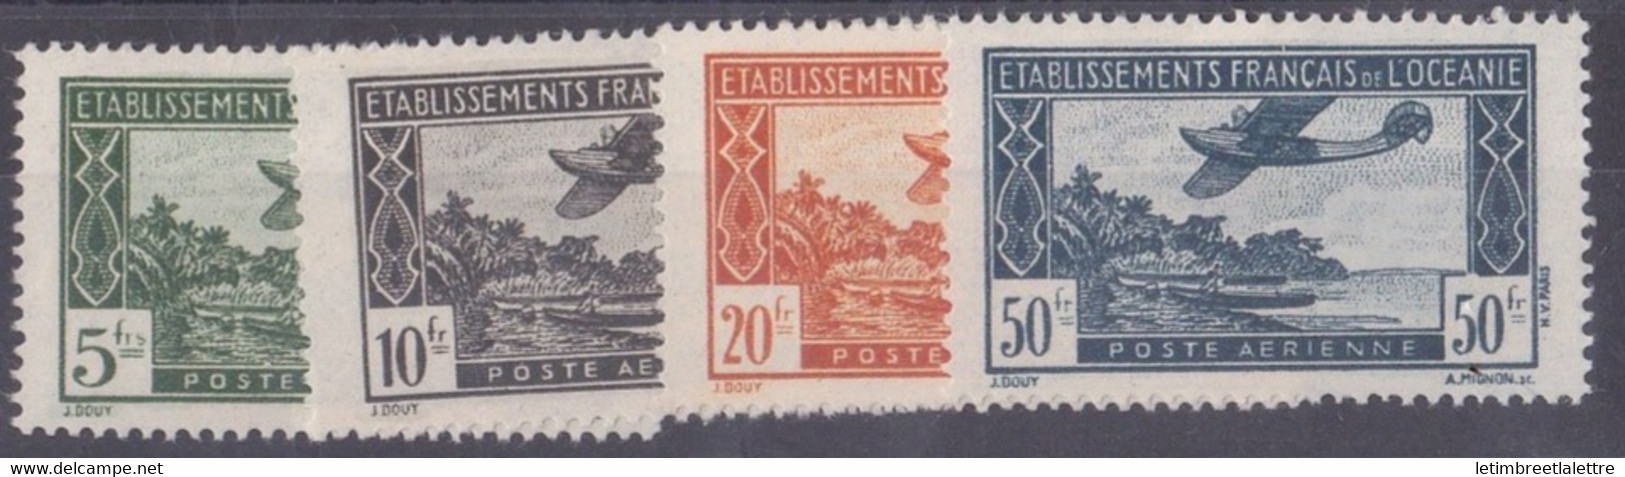 Océanie - Poste Aérienne - YT N° 14 à 17 ** - Neuf Sans Charnière - 1944 - Poste Aérienne